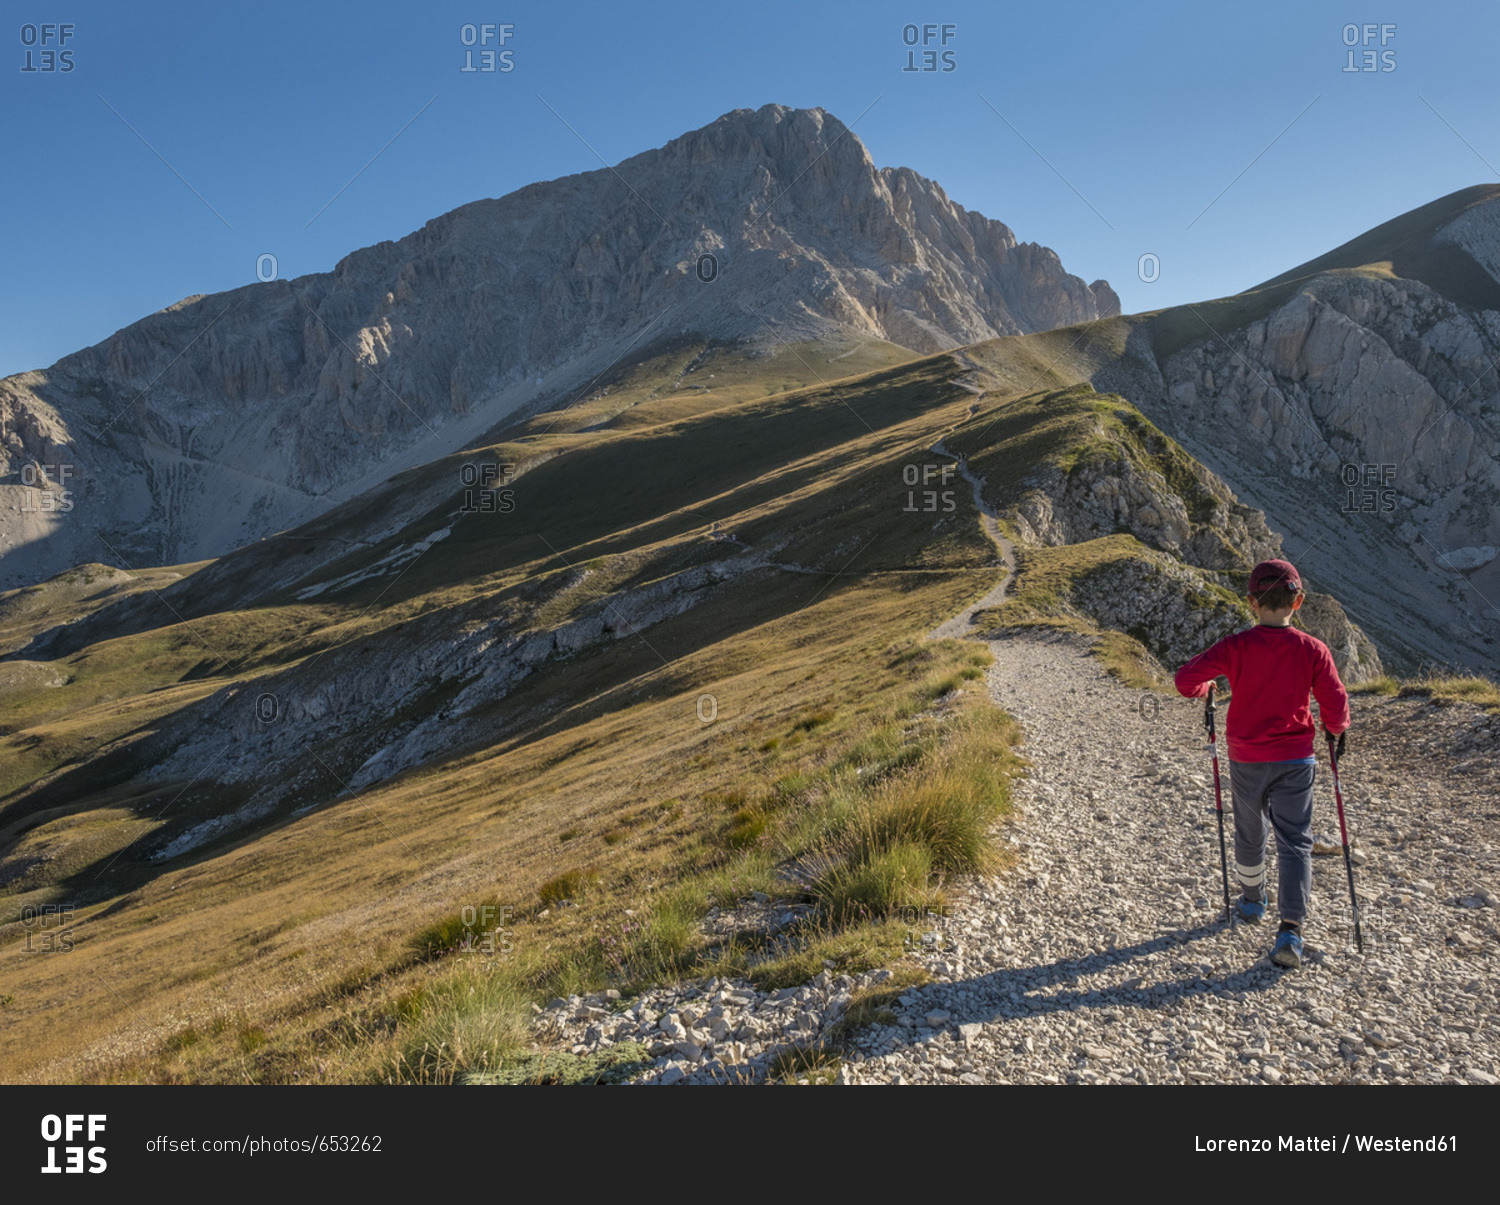 Italy- Abruzzo- Gran Sasso e Monti della Laga National Park- boy on hiking trail of Corno Grande